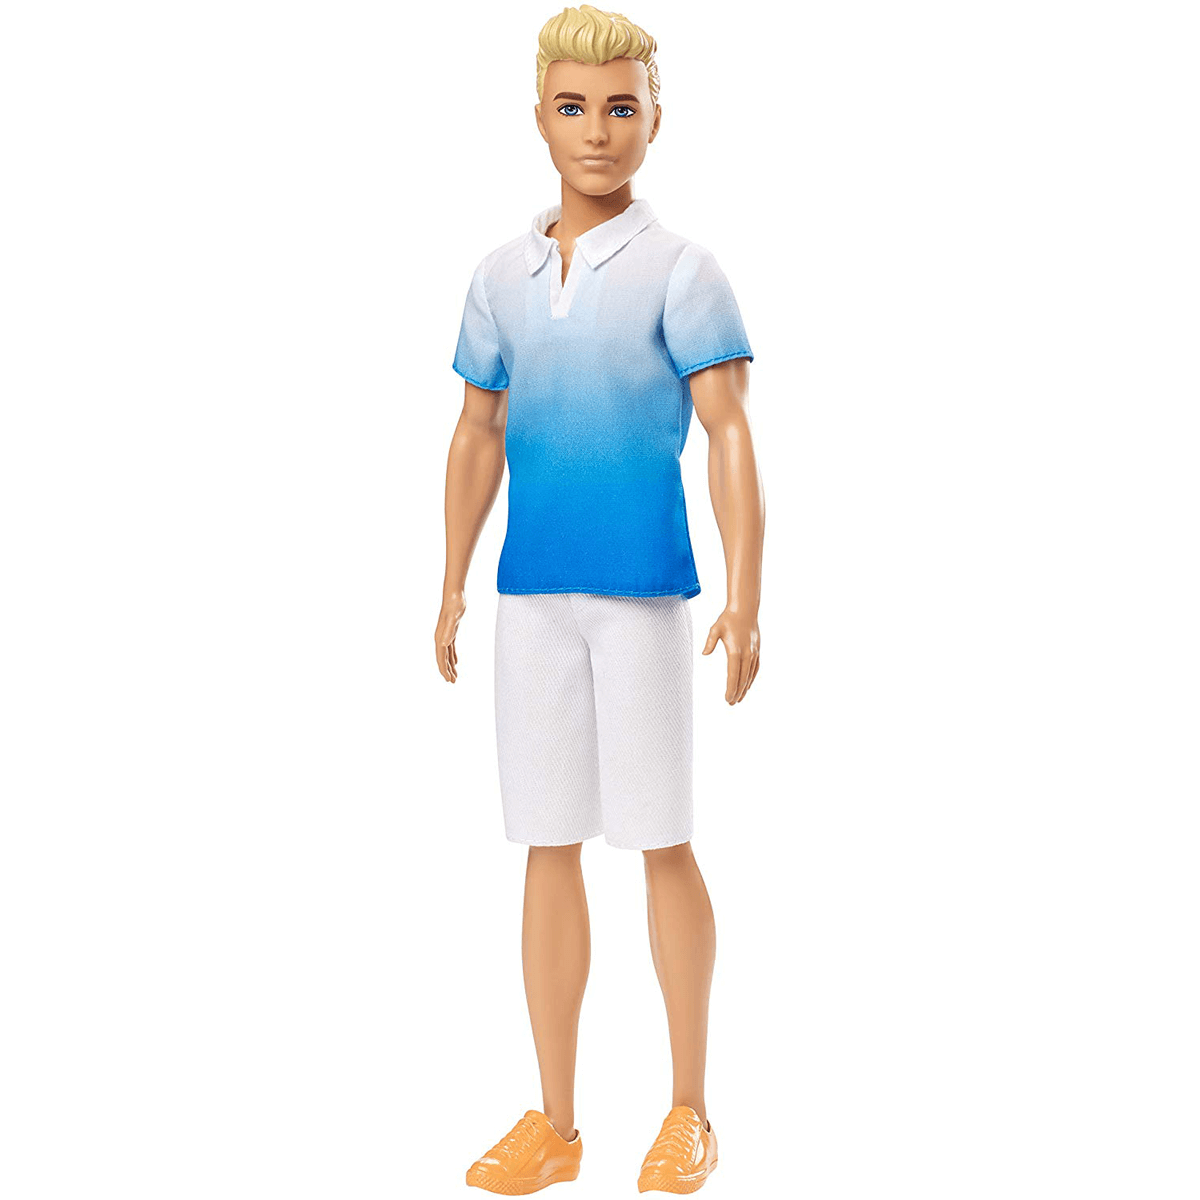 Oefenen Kilauea Mountain wapen Barbie Fashionistas Ken Doll - White Outfit | The Entertainer